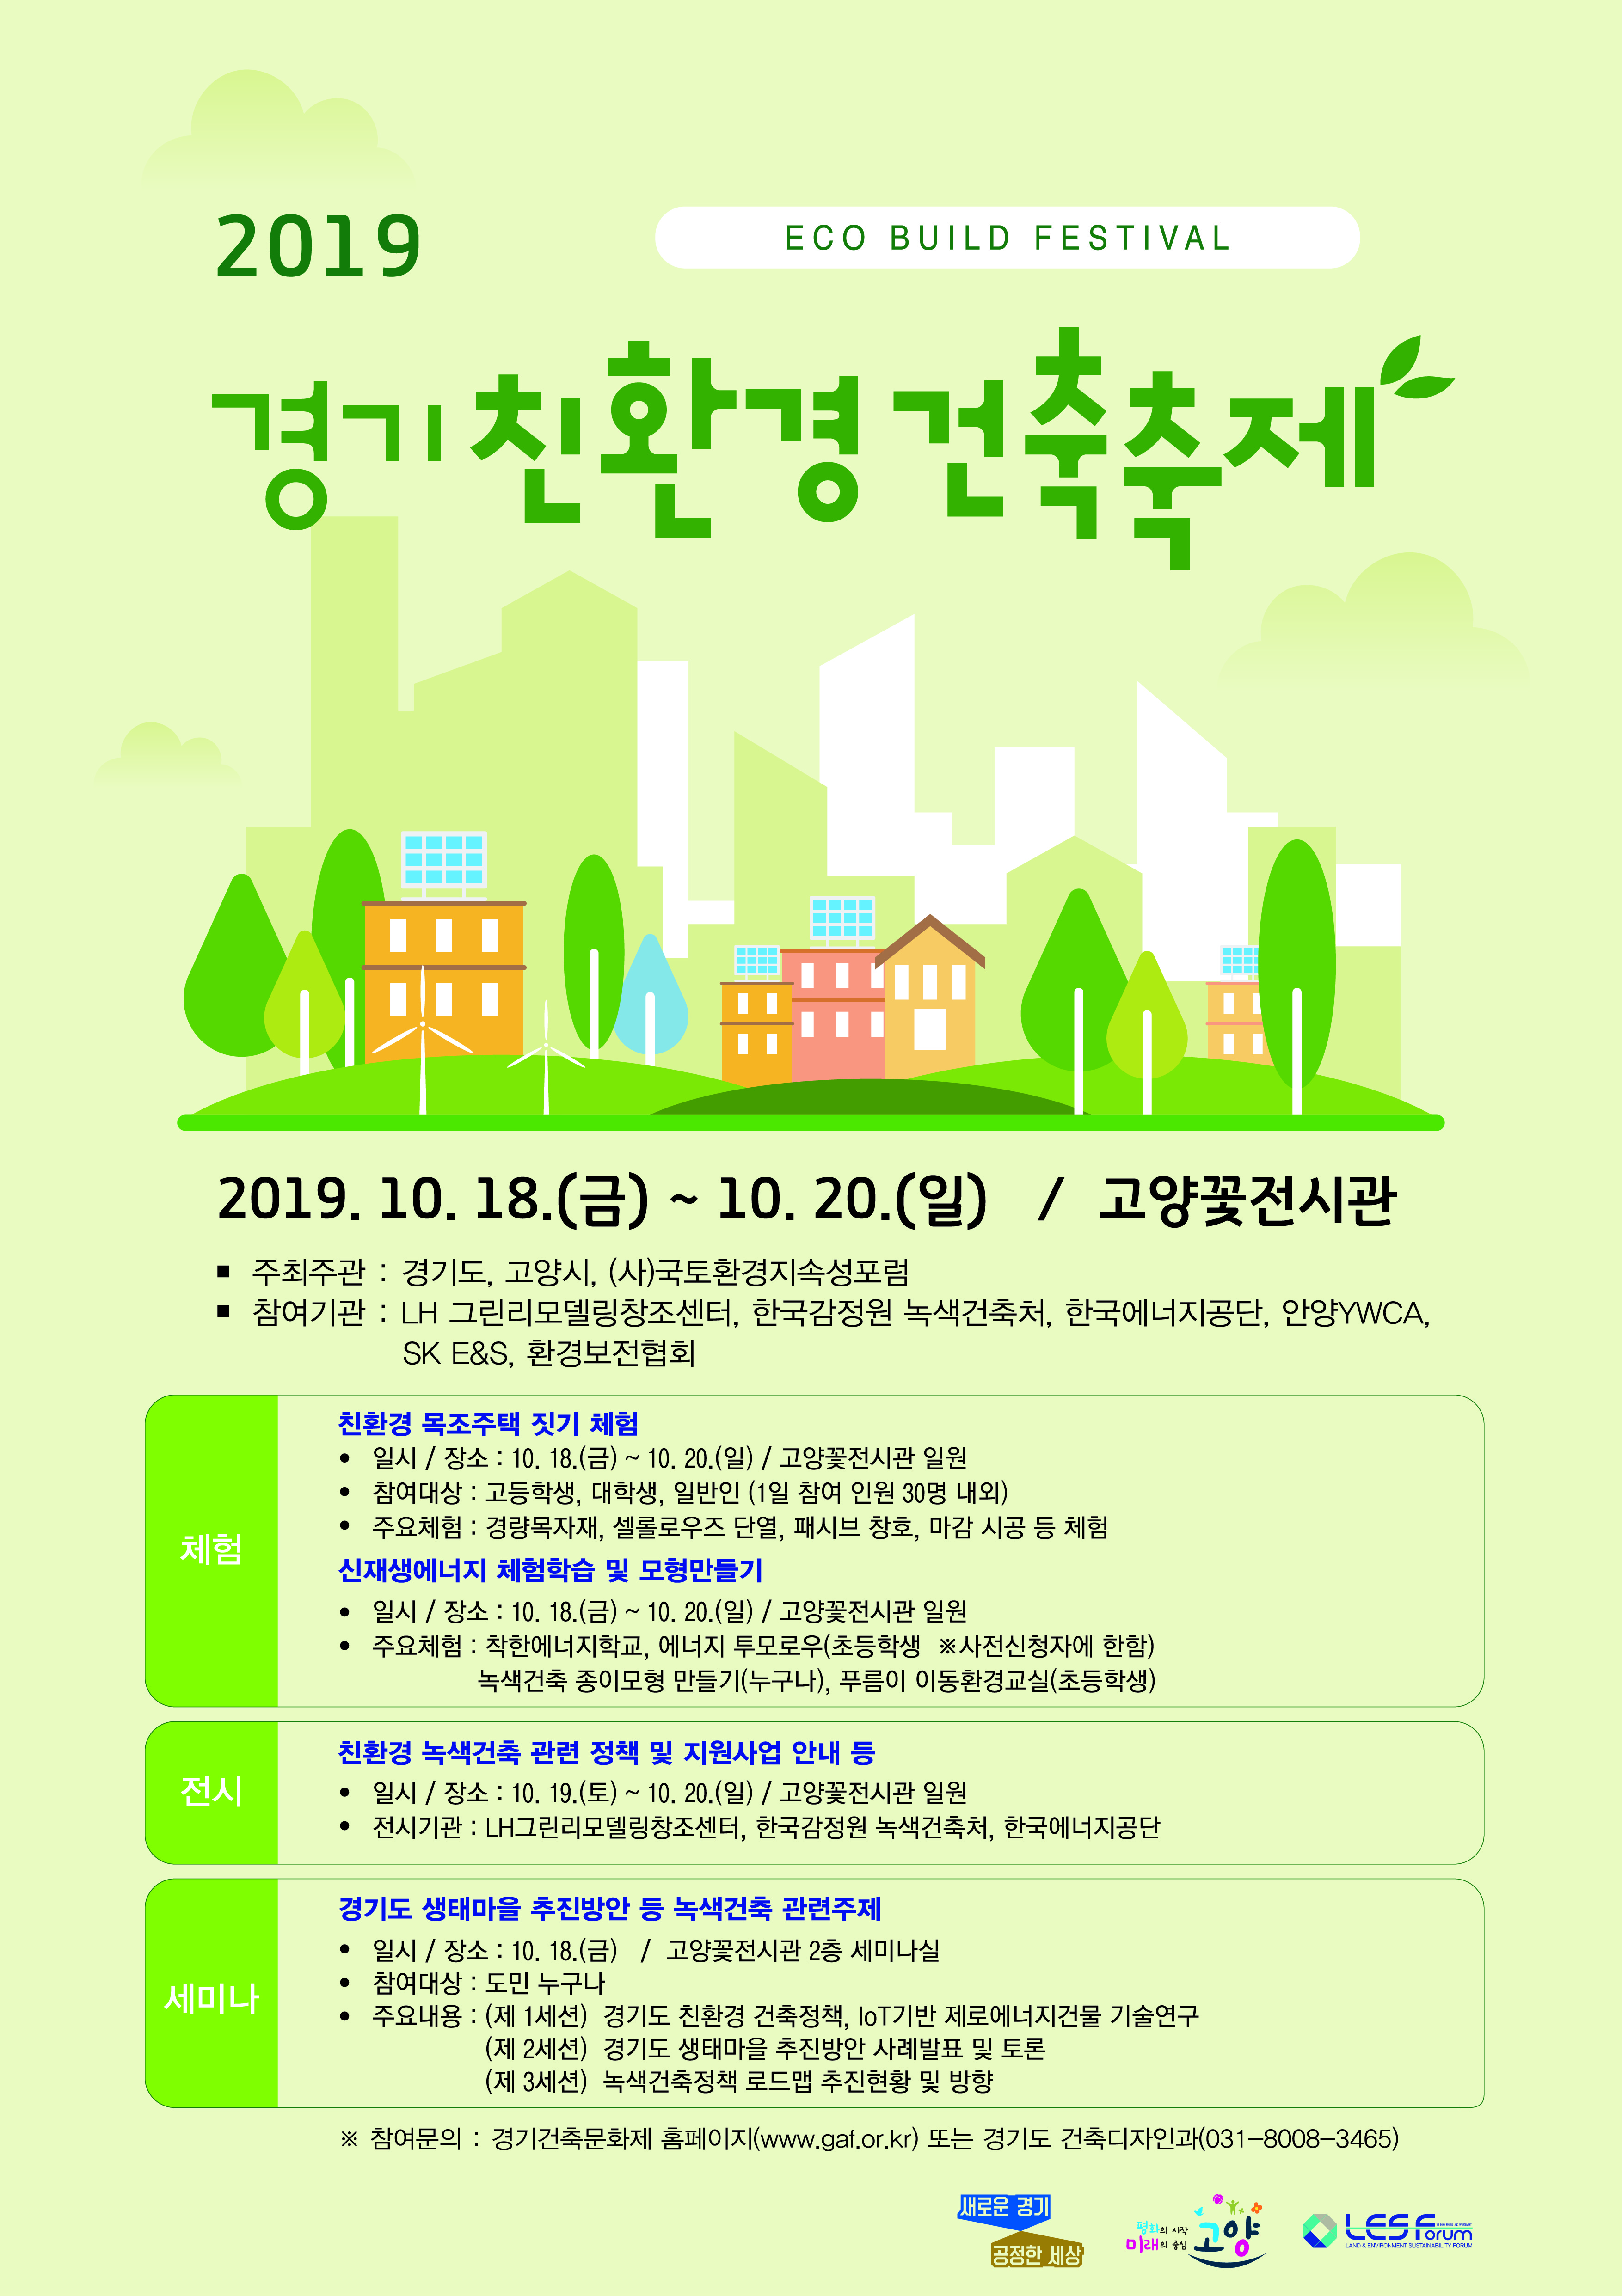 경기도, '2019년 친환경 건축축제' 개최안내입니다. 자세한 사항은 아래의 글을 참조해주세요.